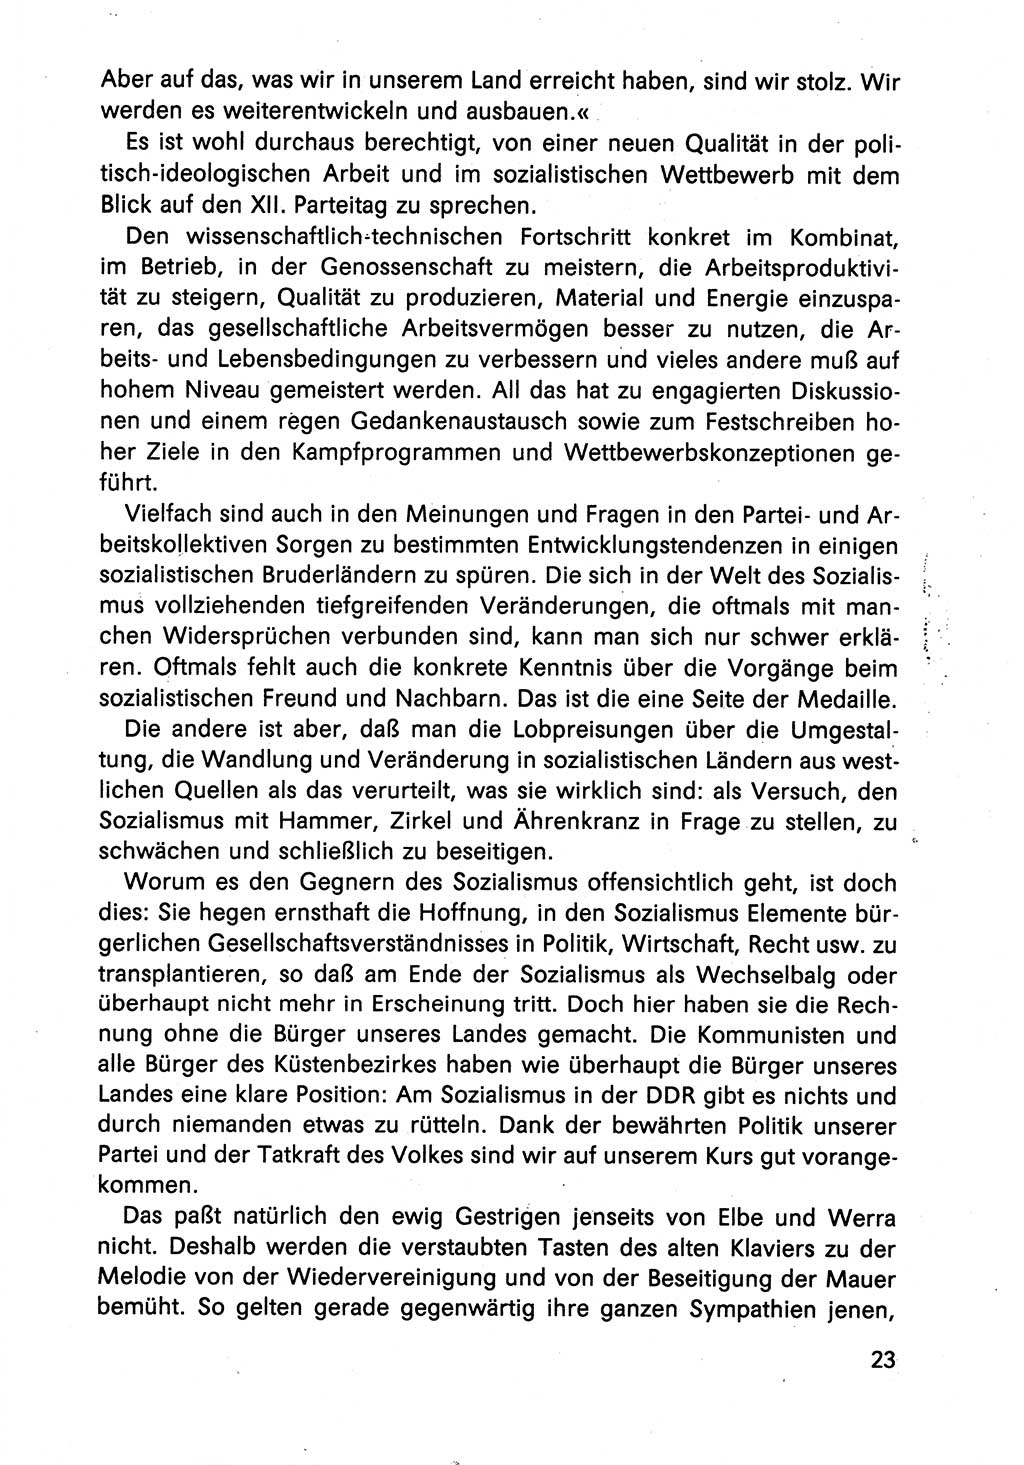 Diskussionsreden, 8. Tagung des ZK (Zentralkomitee) der SED (Sozialistische Einheitspartei Deutschlands) [Deutsche Demokratische Republik (DDR)] 1989, Seite 23 (Disk.-Red. 8. Tg. ZK SED DDR 1989, S. 23)